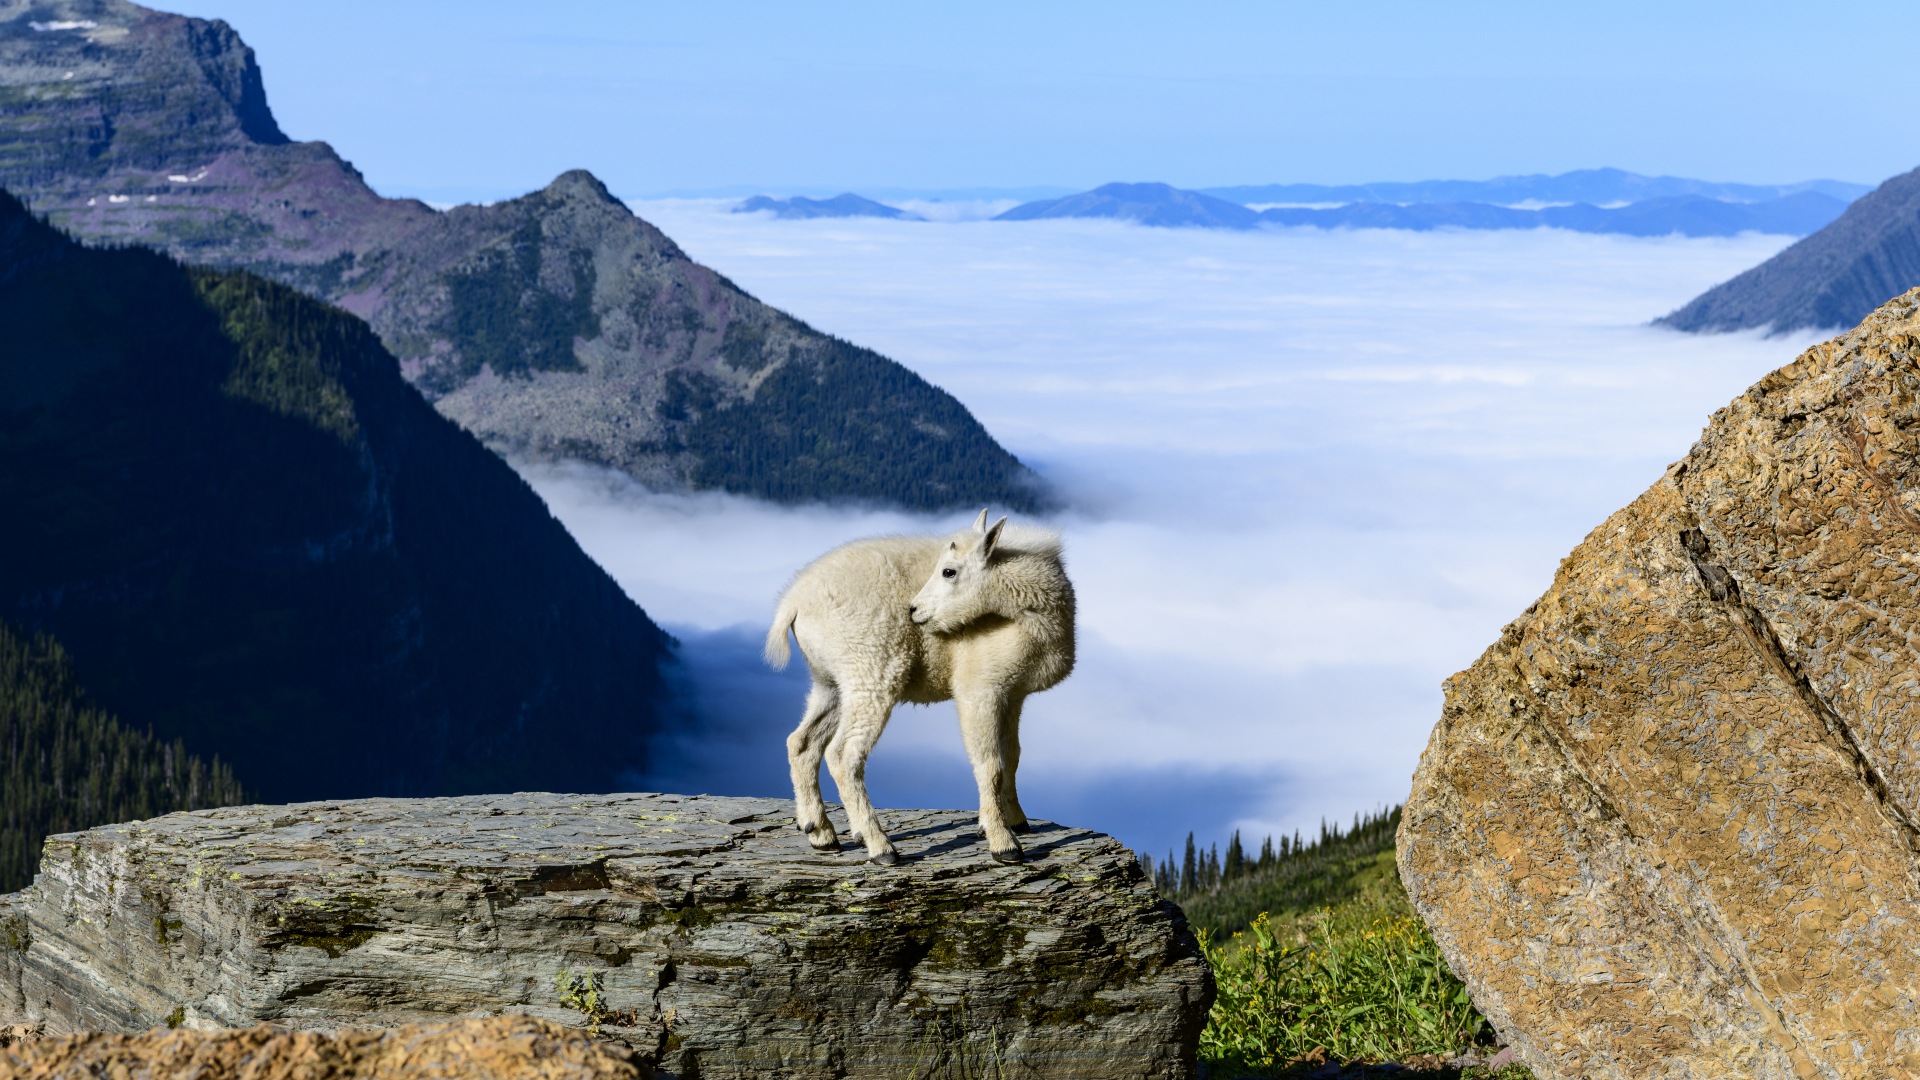 Una cabra montés se alza sobre una roca con montañas cubiertas de nubes en el fondo